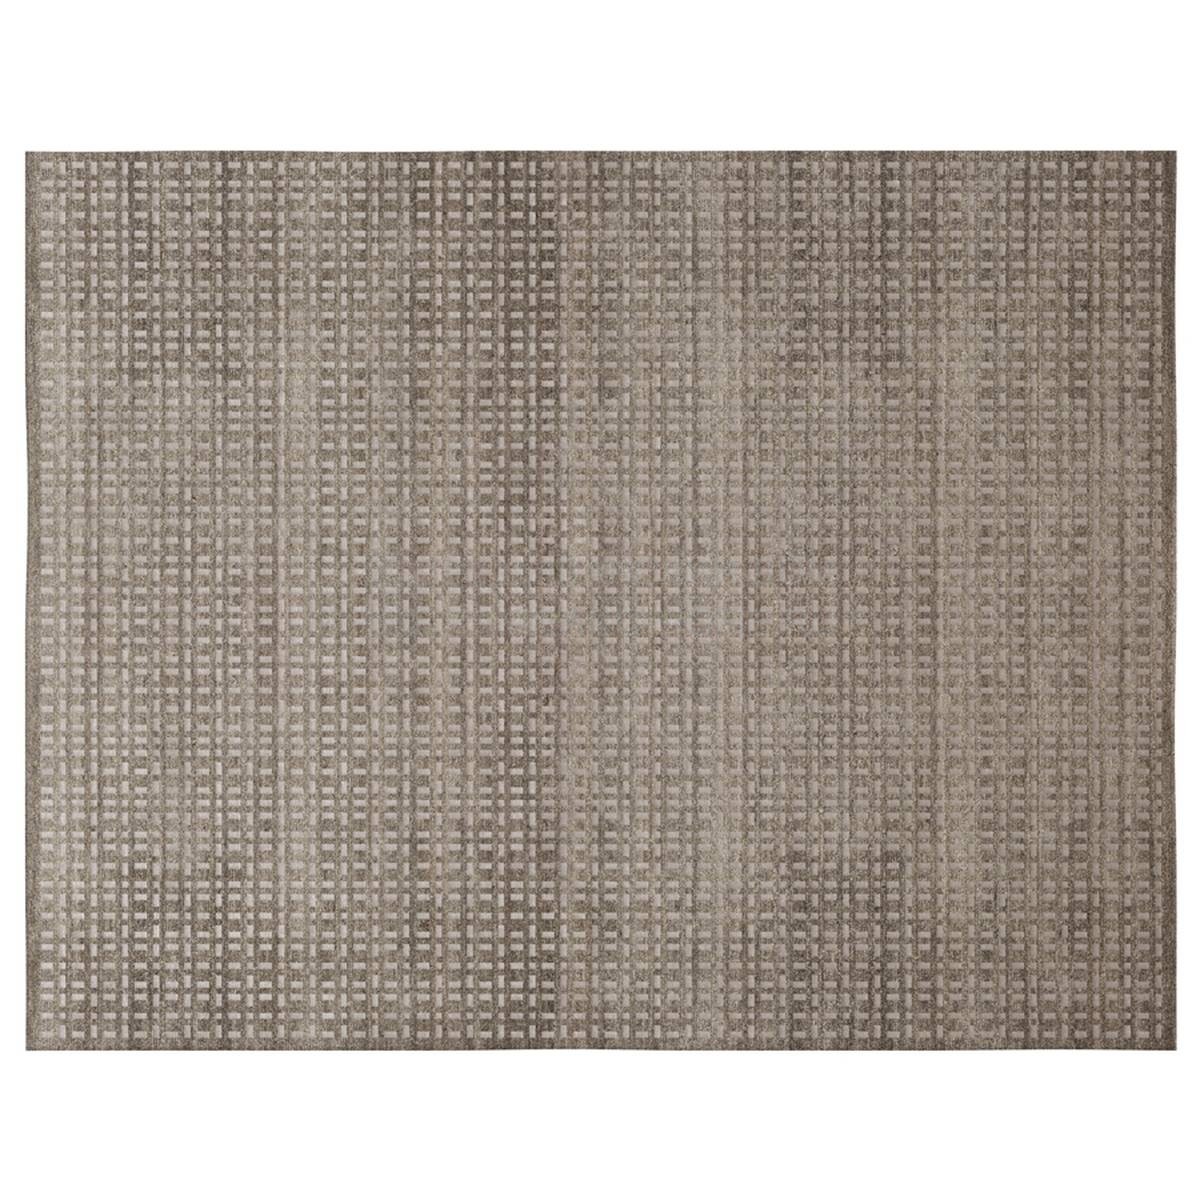 Ковер Mosaic rug из Италии фабрики GIORGETTI